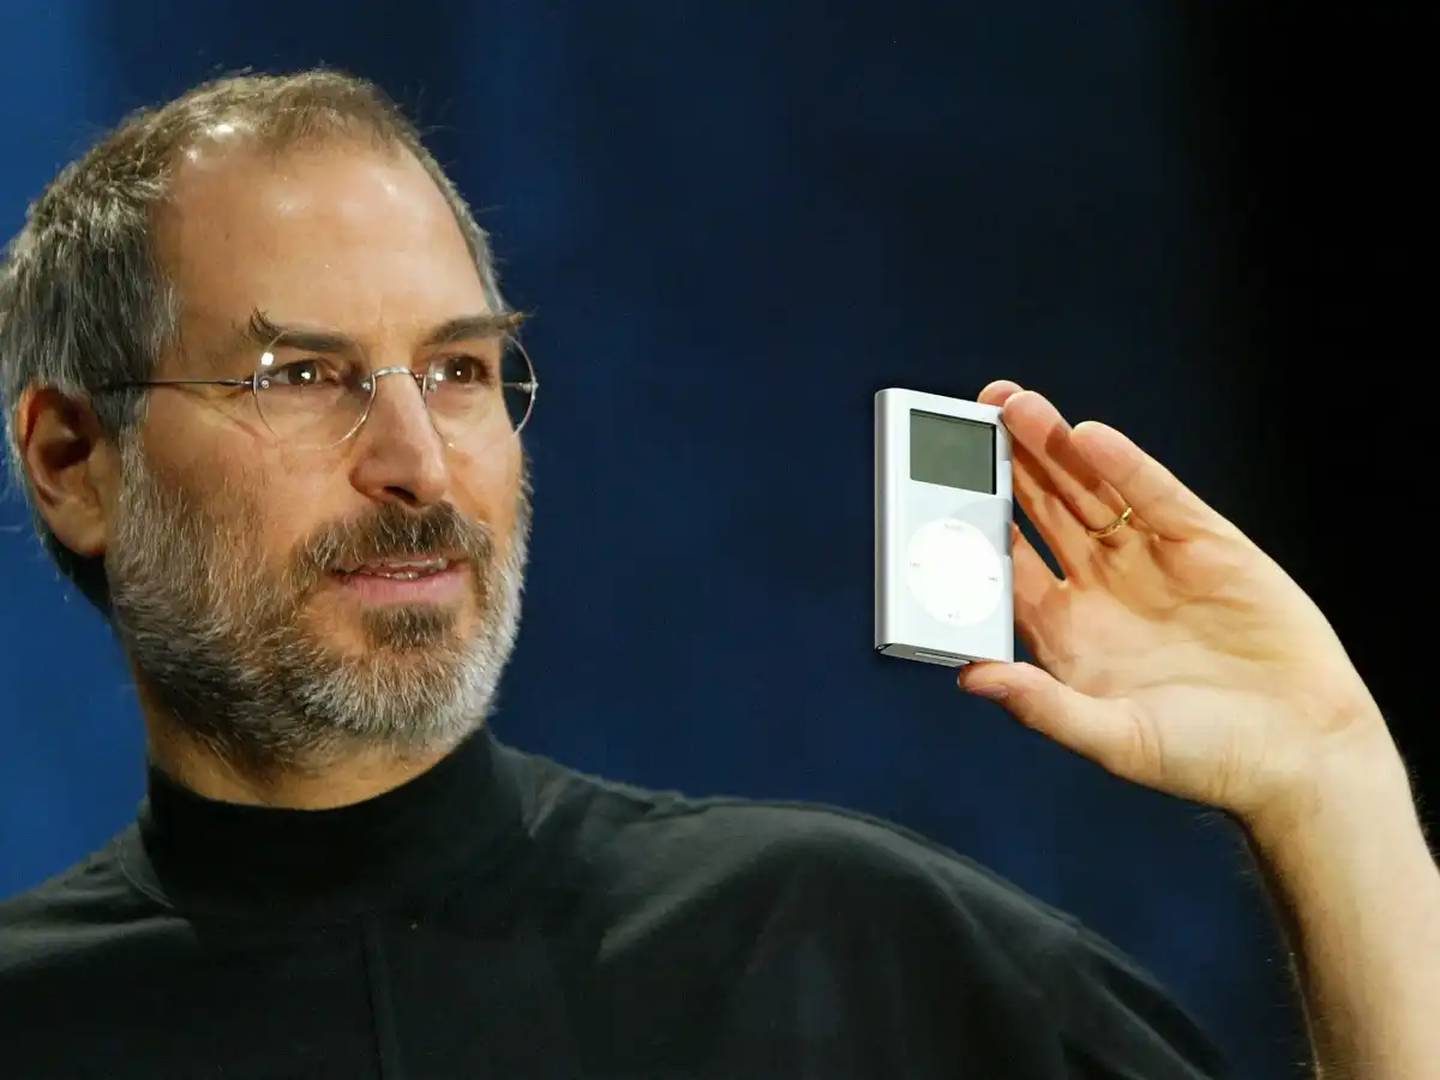 Steve Jobs apresentando o iPod, o aparelho que relançou a empresa